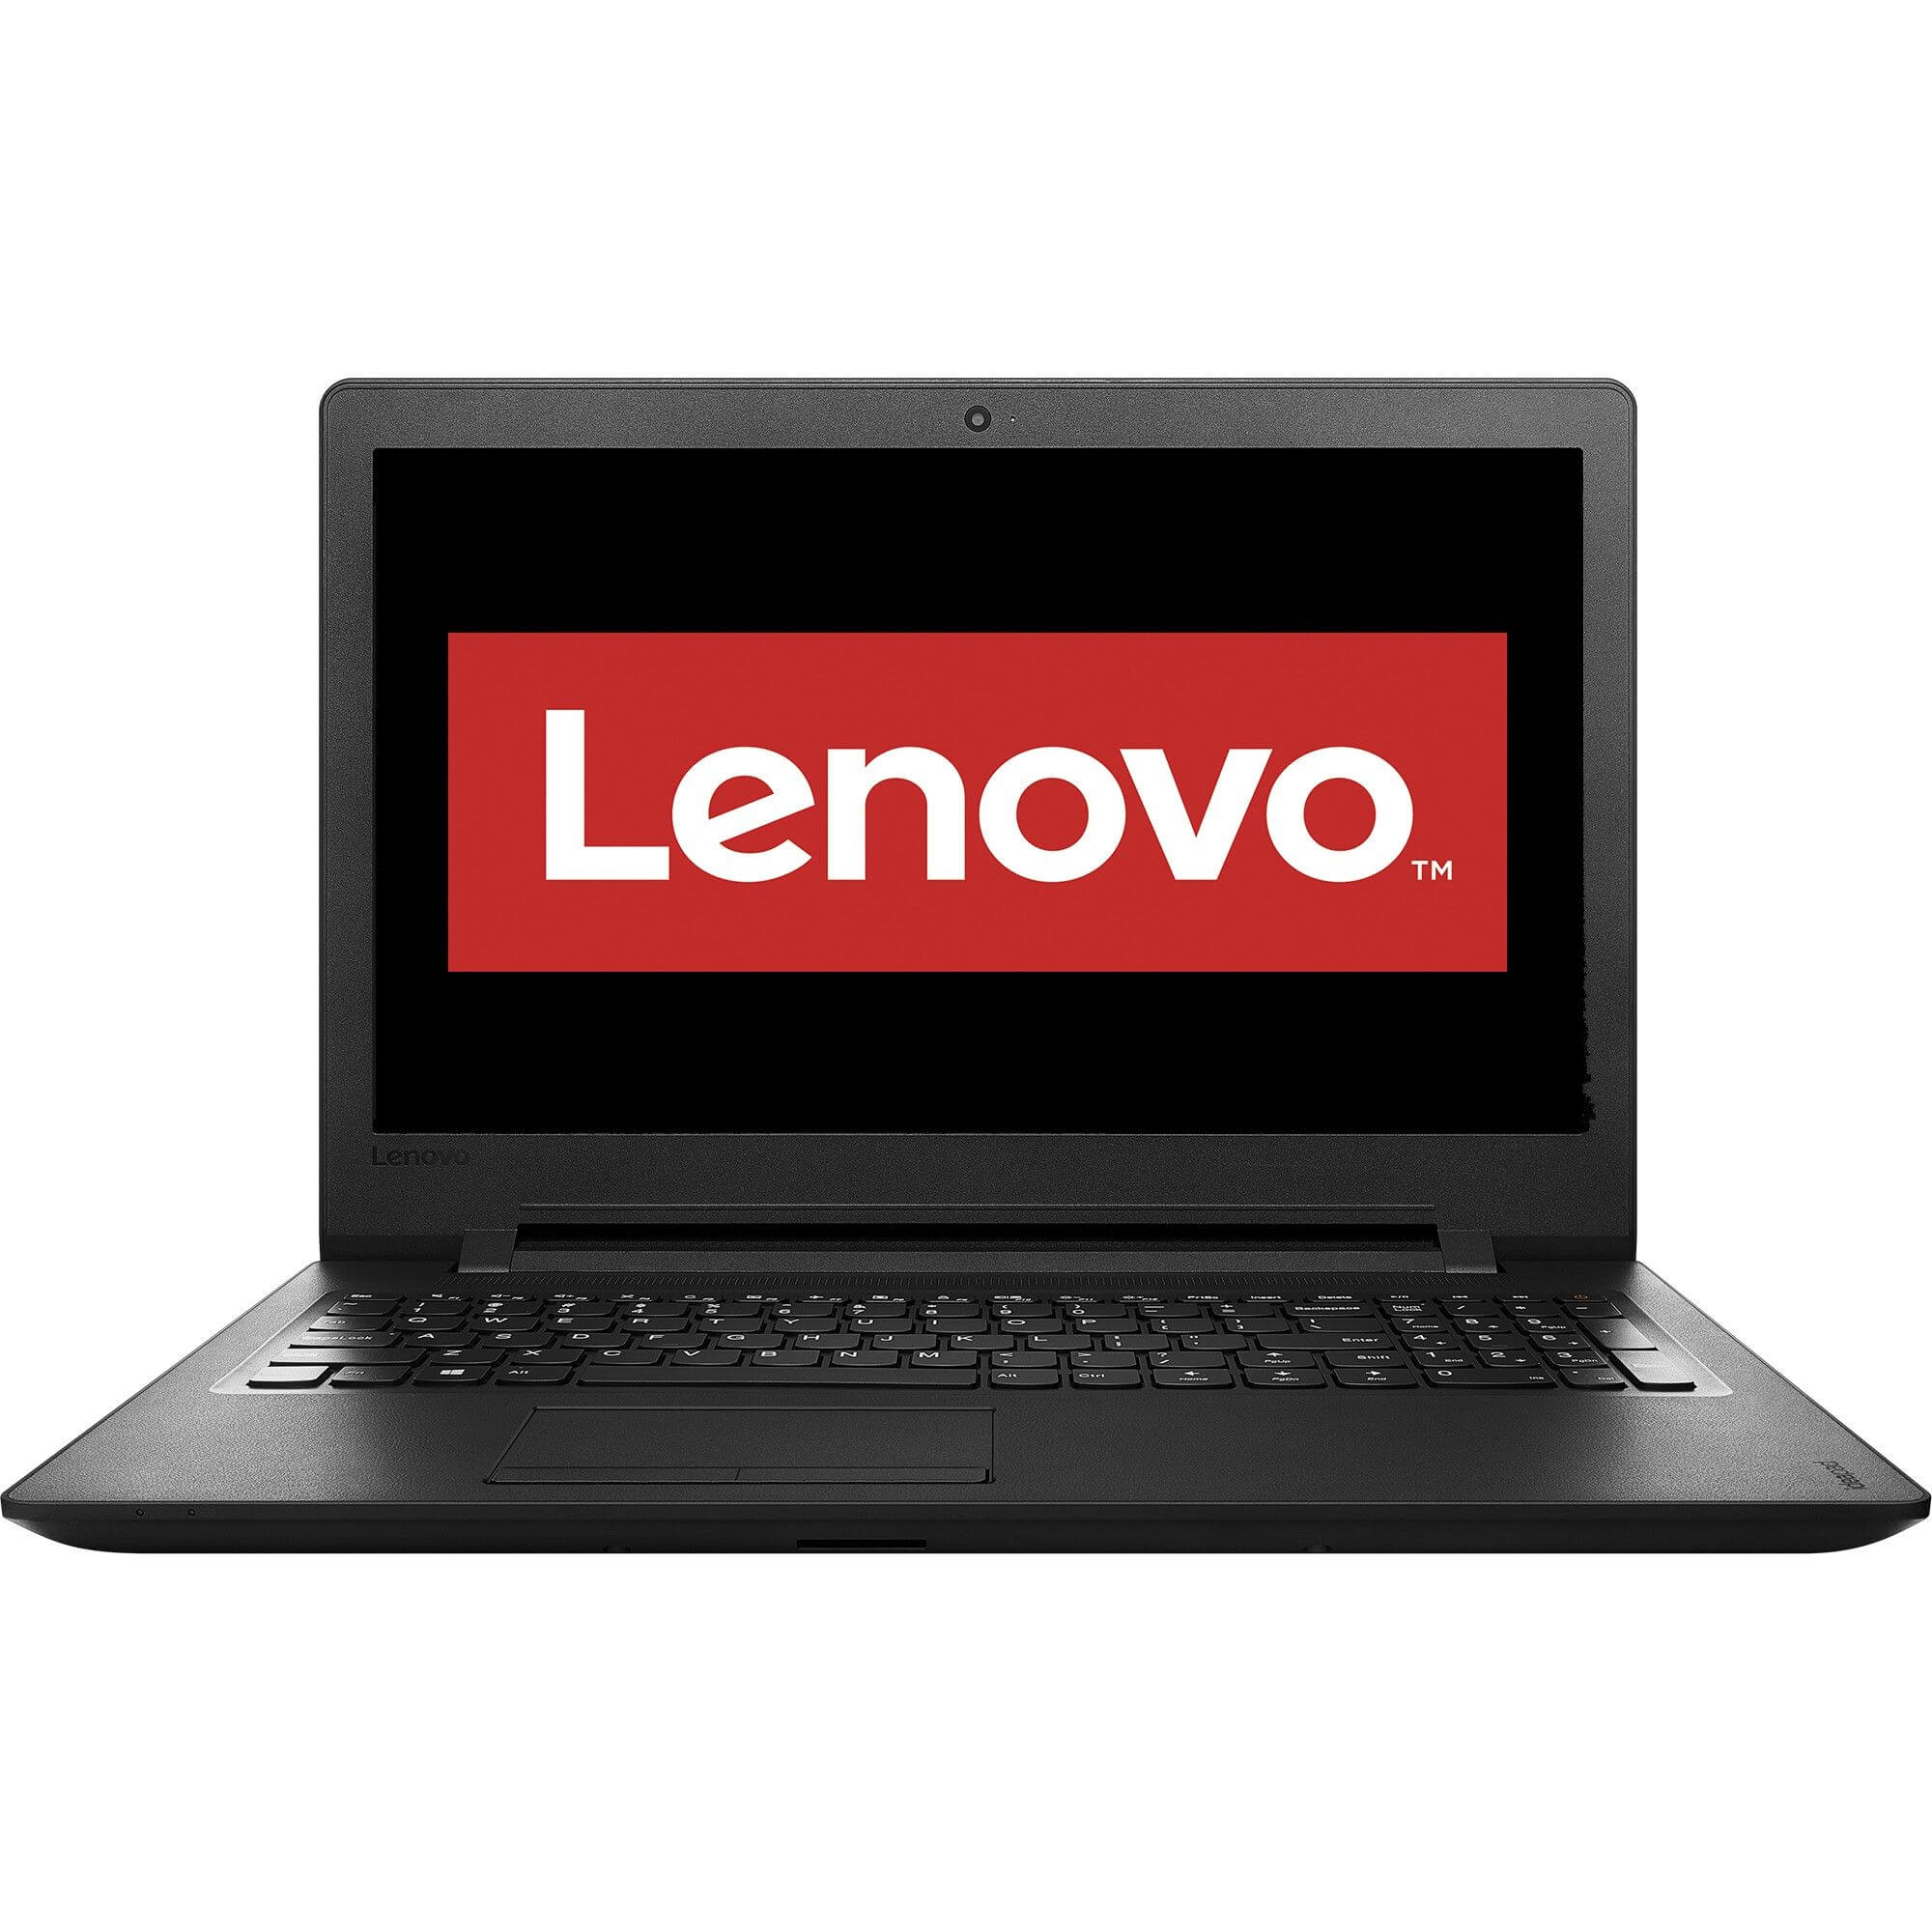 Laptop Lenovo IdeaPad 110-15IBR, Intel® Celeron® N3060, 4GB DDR3, HDD 500GB, Intel® HD Graphics, Free DOS